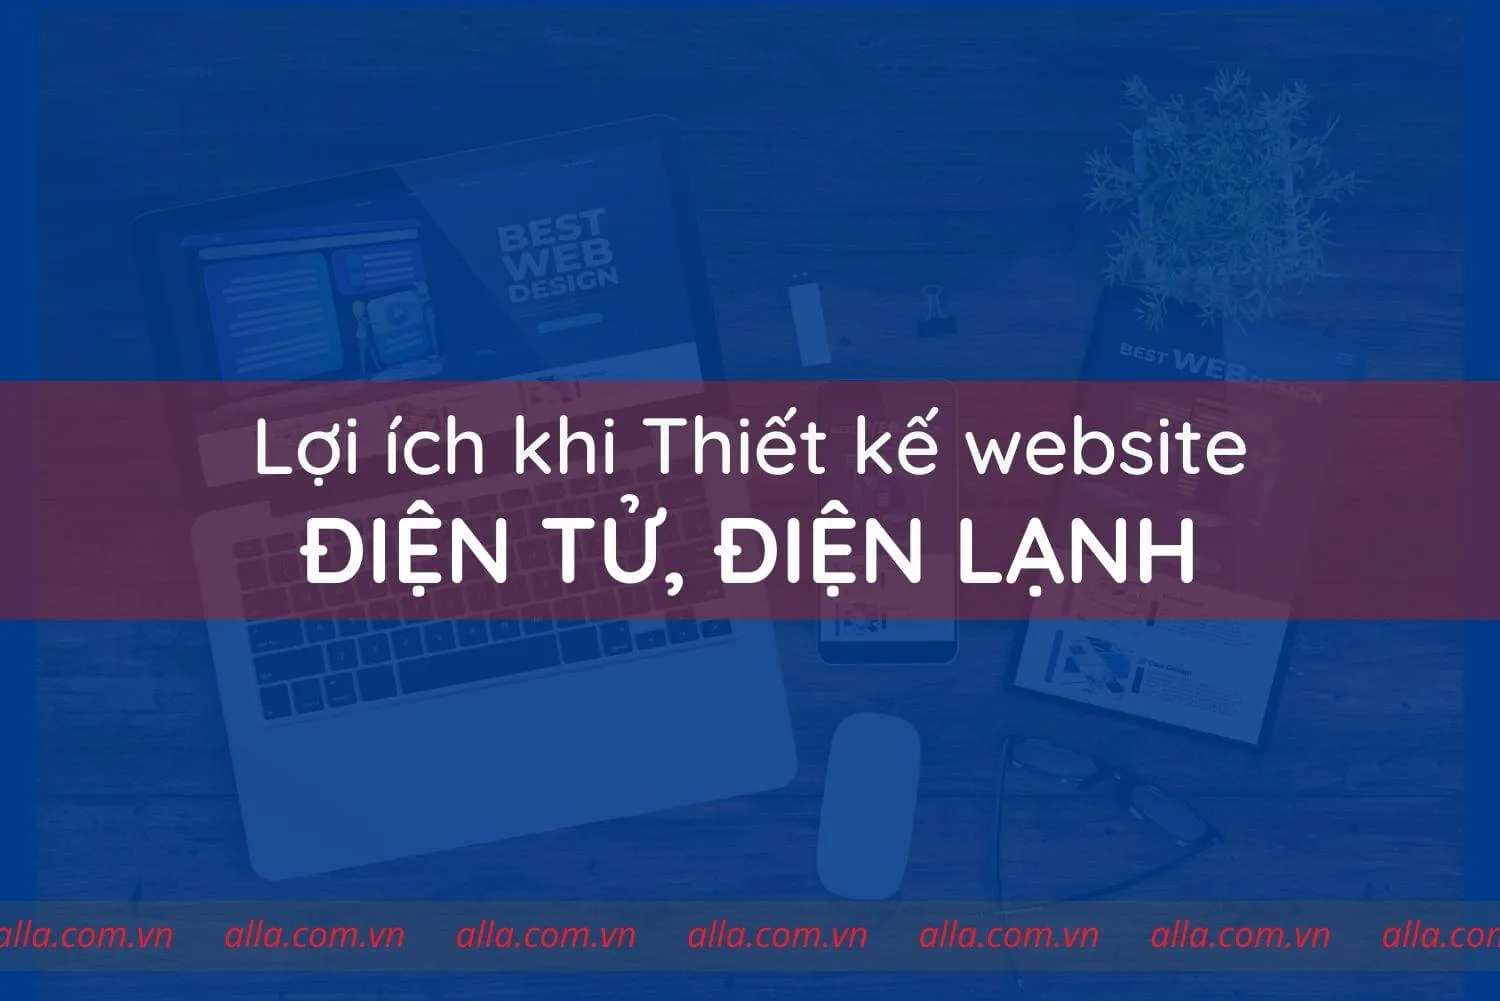 loi-ich-khi-thiet-ke-website-dien-tu-dien-lanh